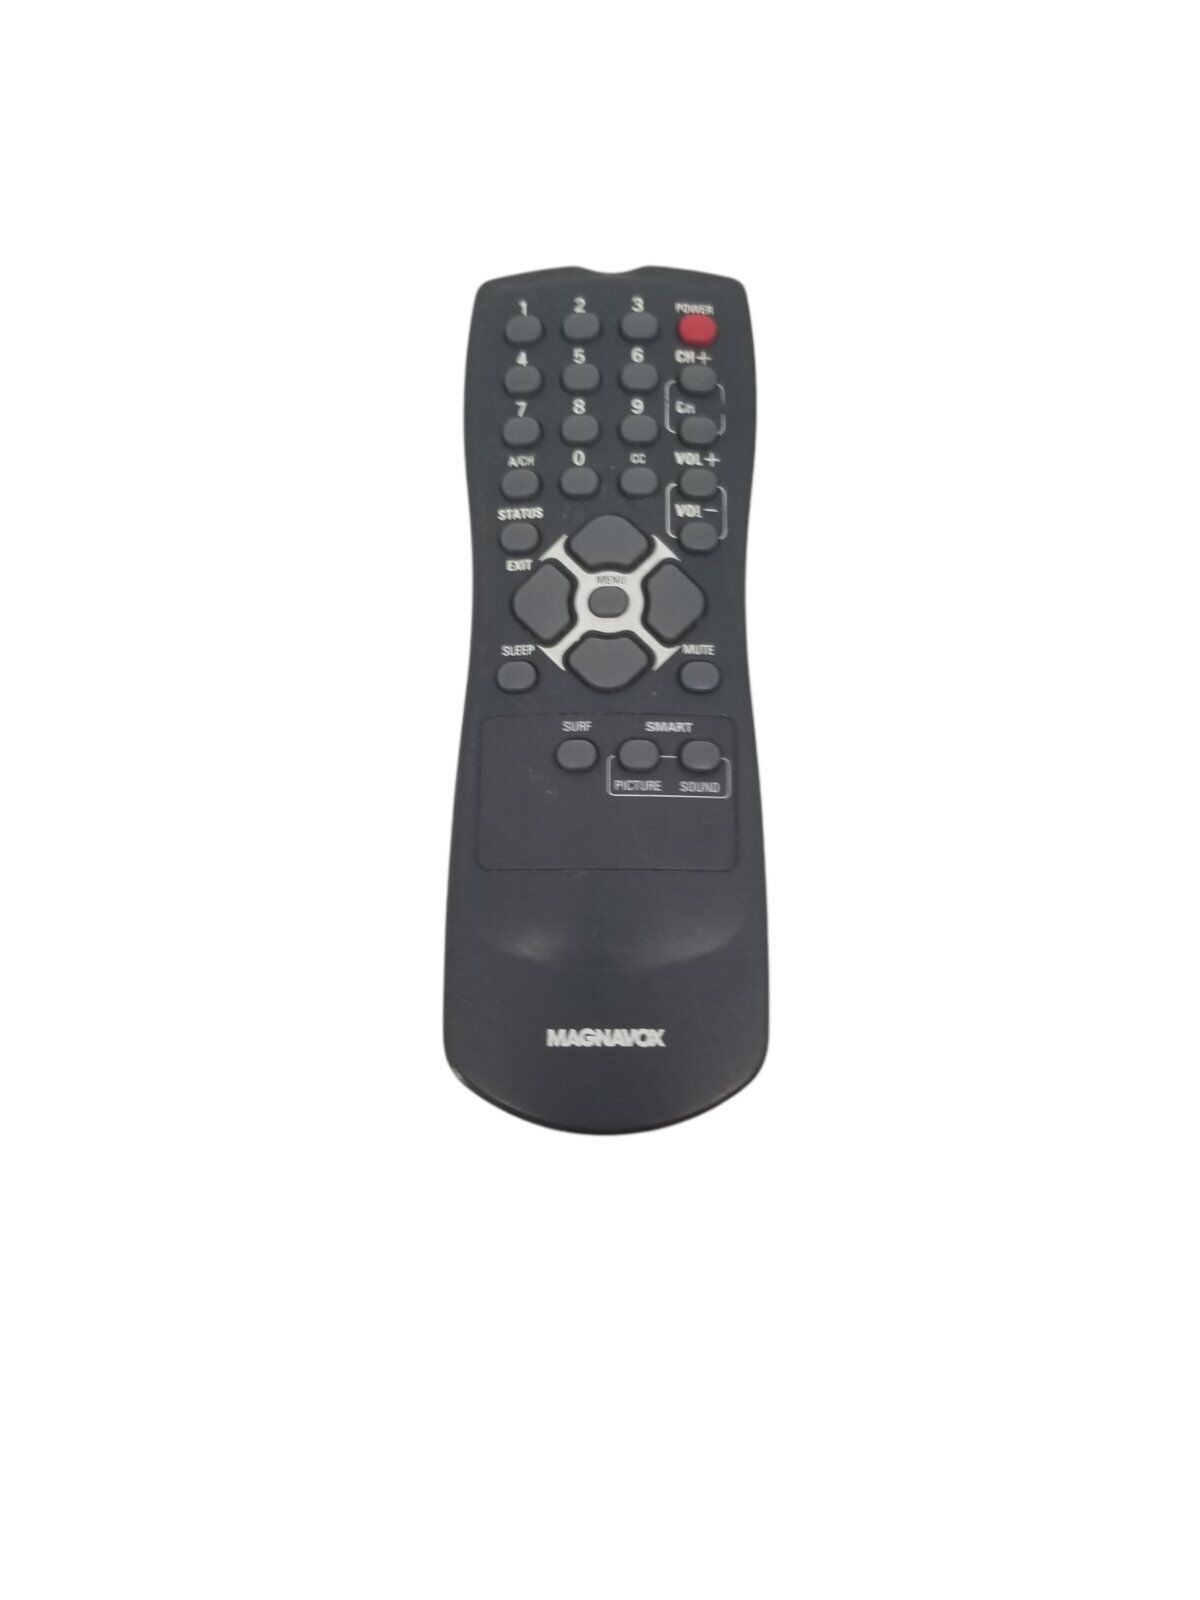 Magnavox DVD Player Remote IECR06 AA UM-3- No Battery Cover - $8.56